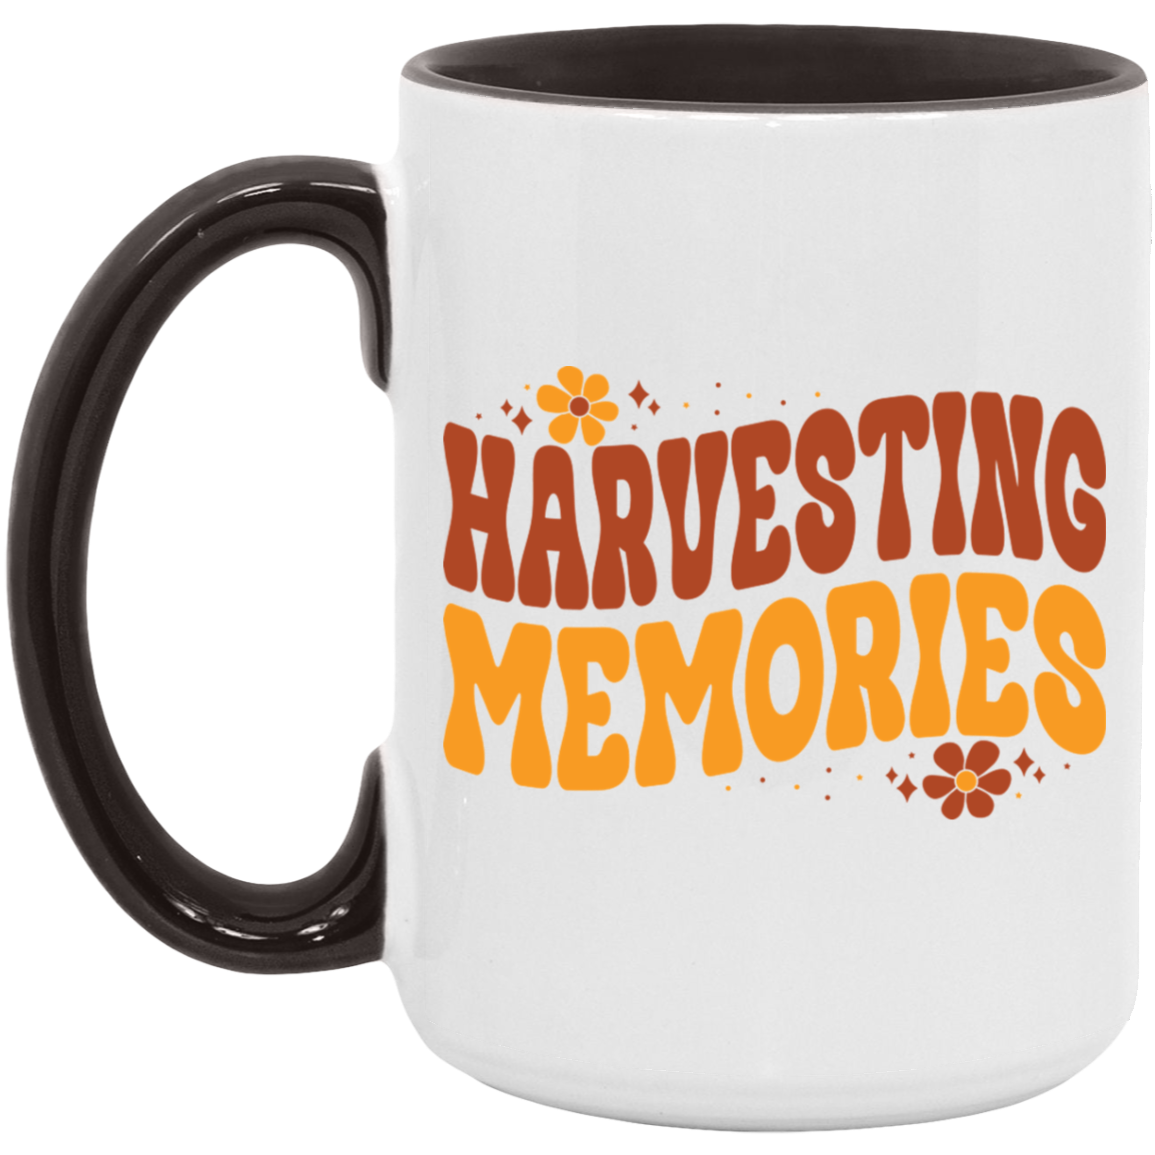 Harvesting Memories Mug